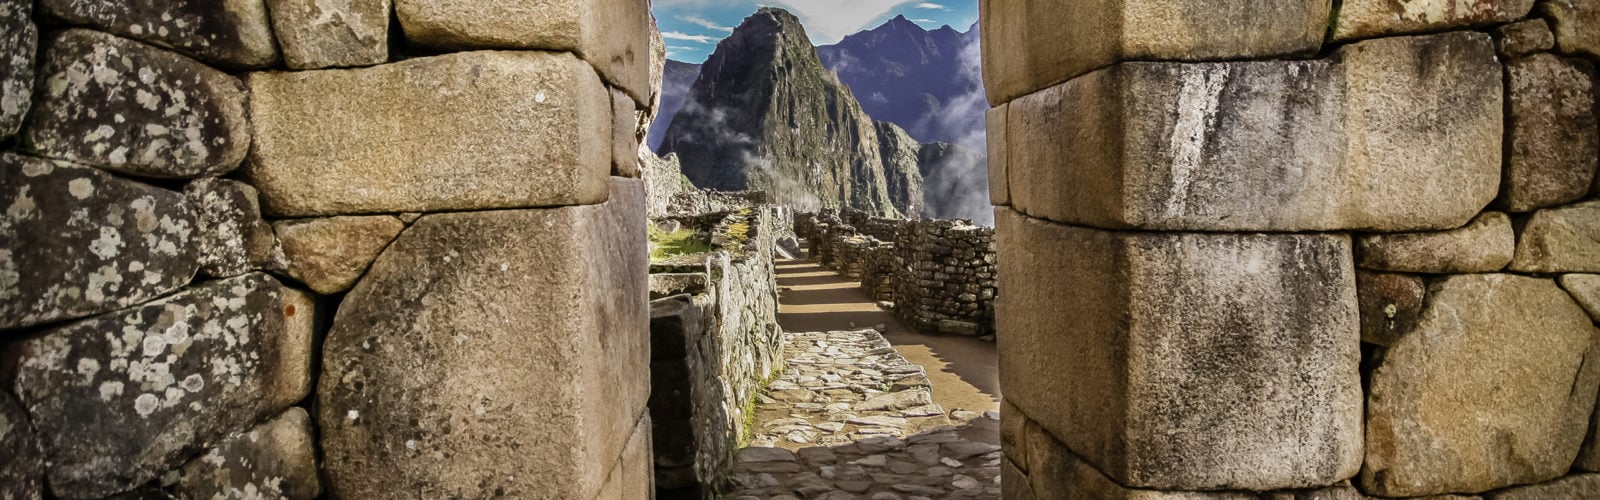 Machu Picchu ruins, Peru